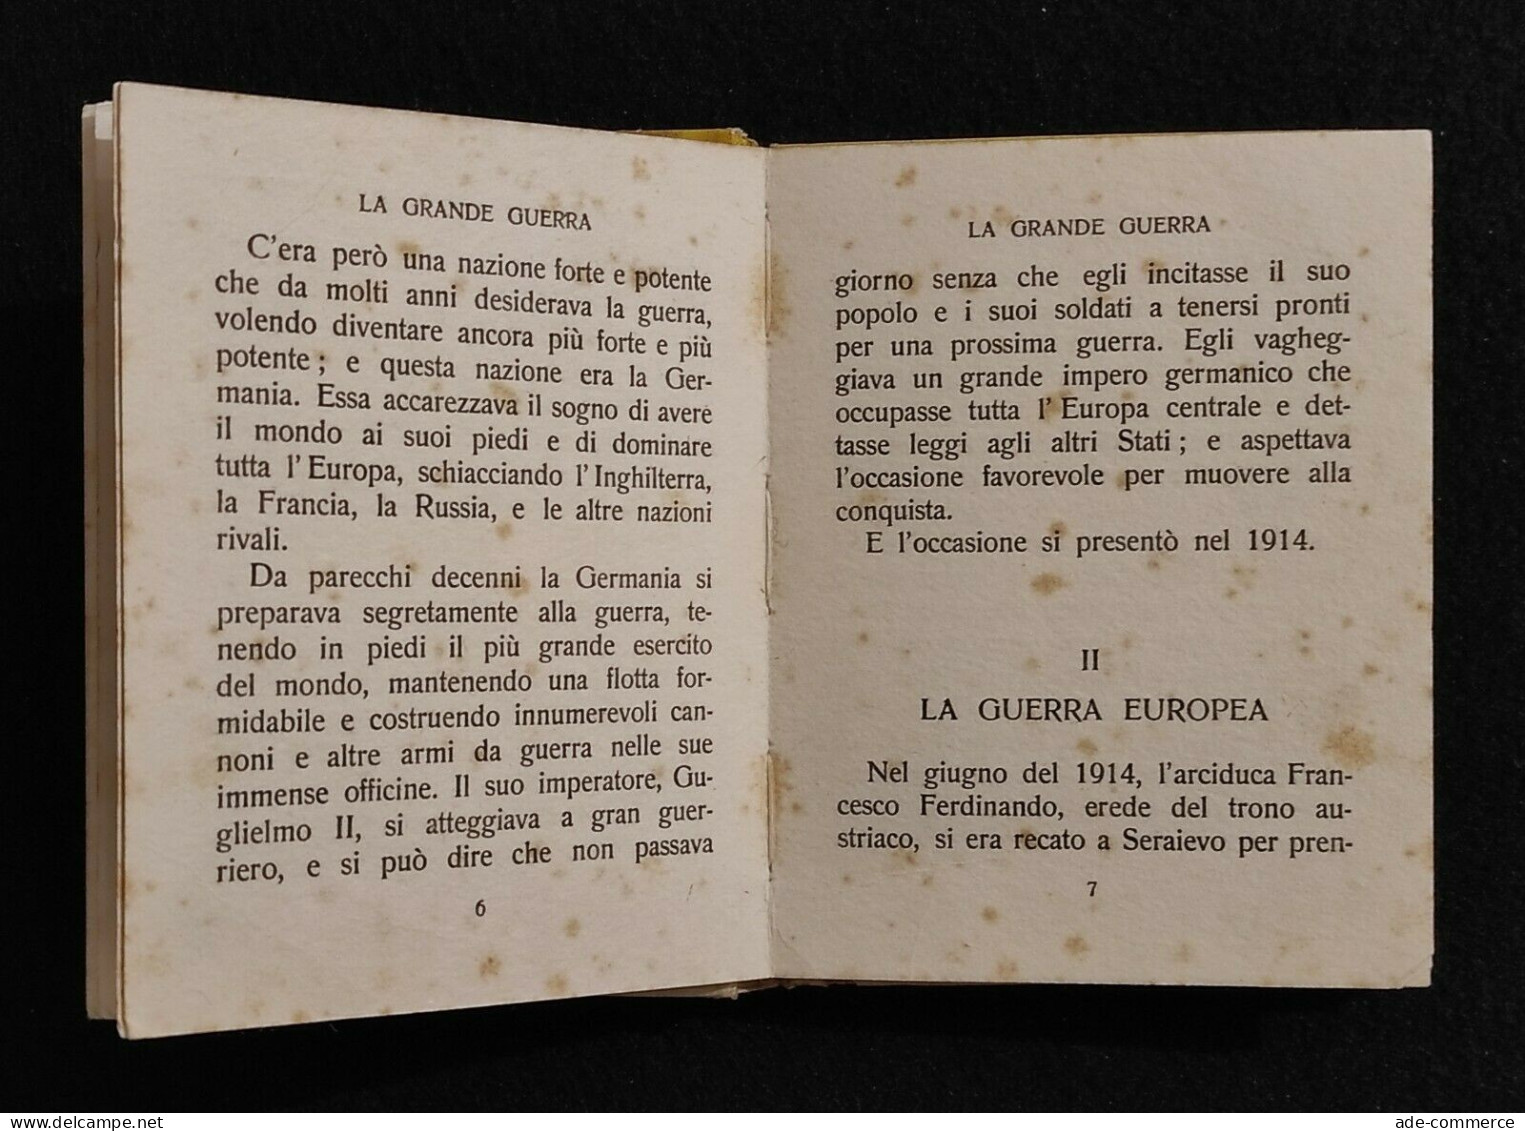 Italia Nostra - Grande Guerra - Piccoli Libri della Patria - Ed. Salani - 1935